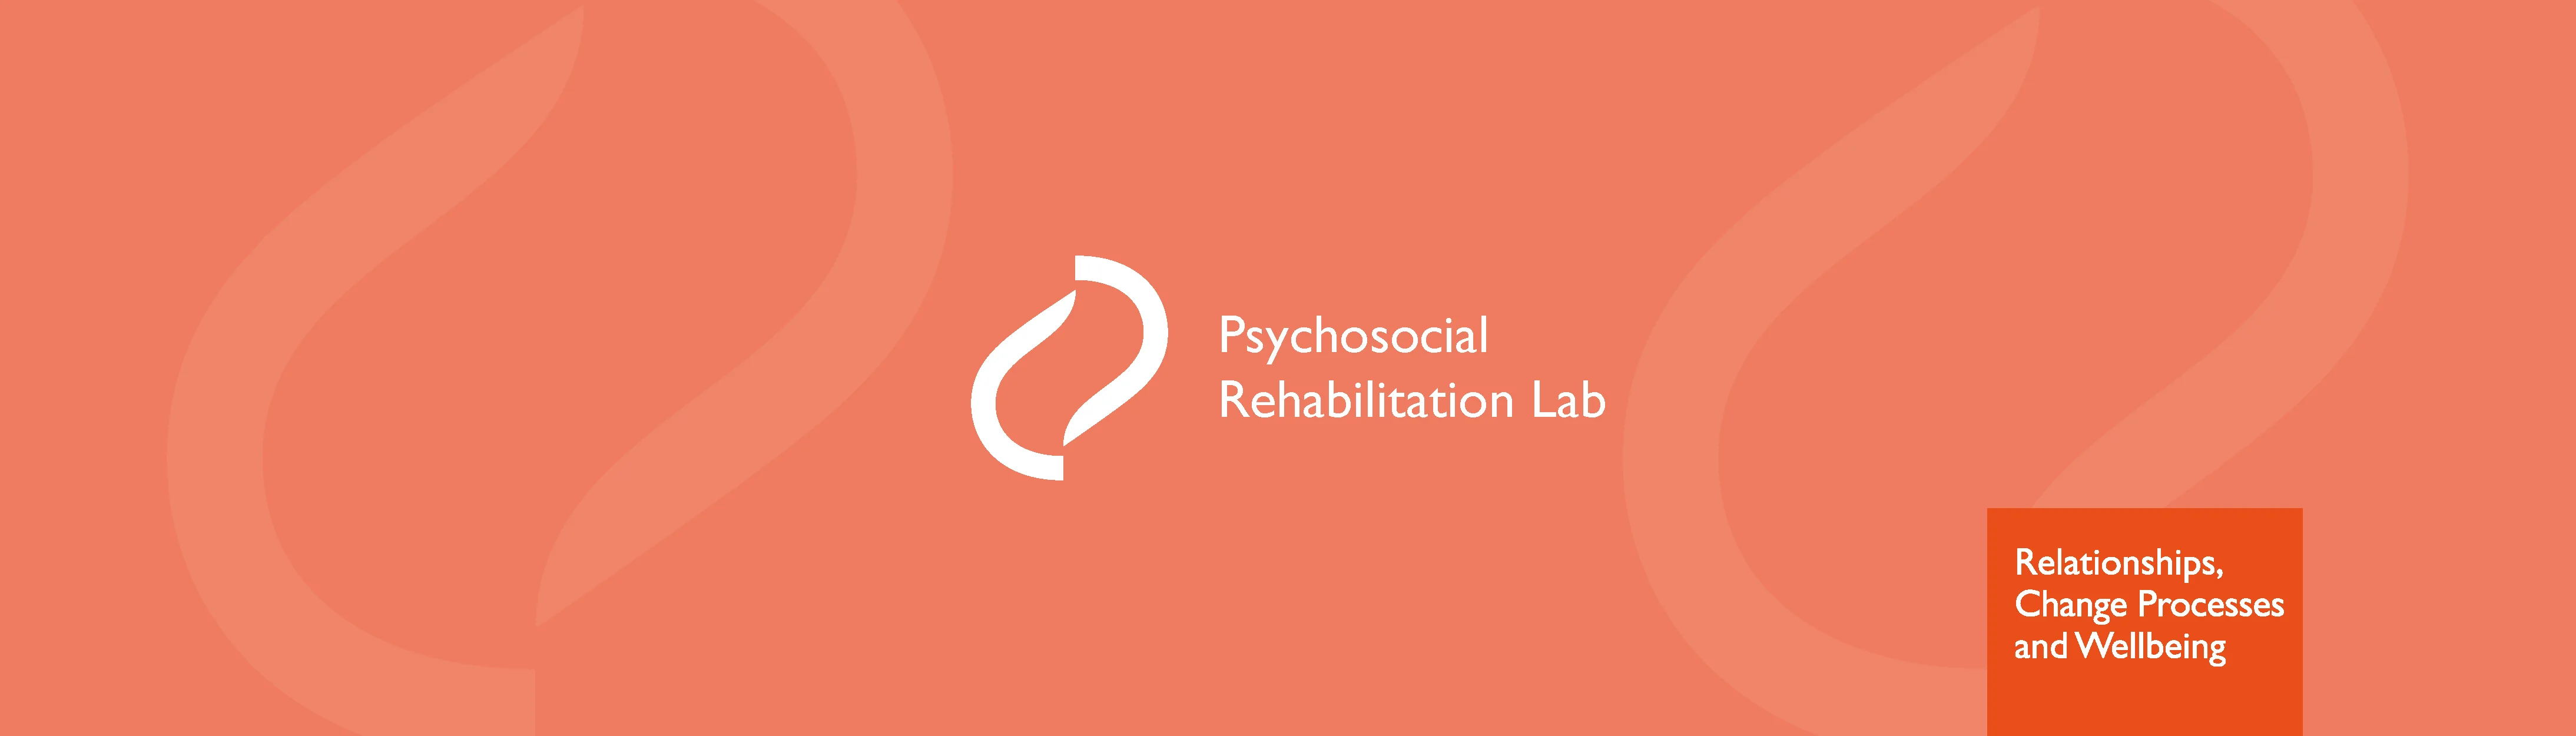 Logótipo do Laboratório de Reabilitação Psicossocial